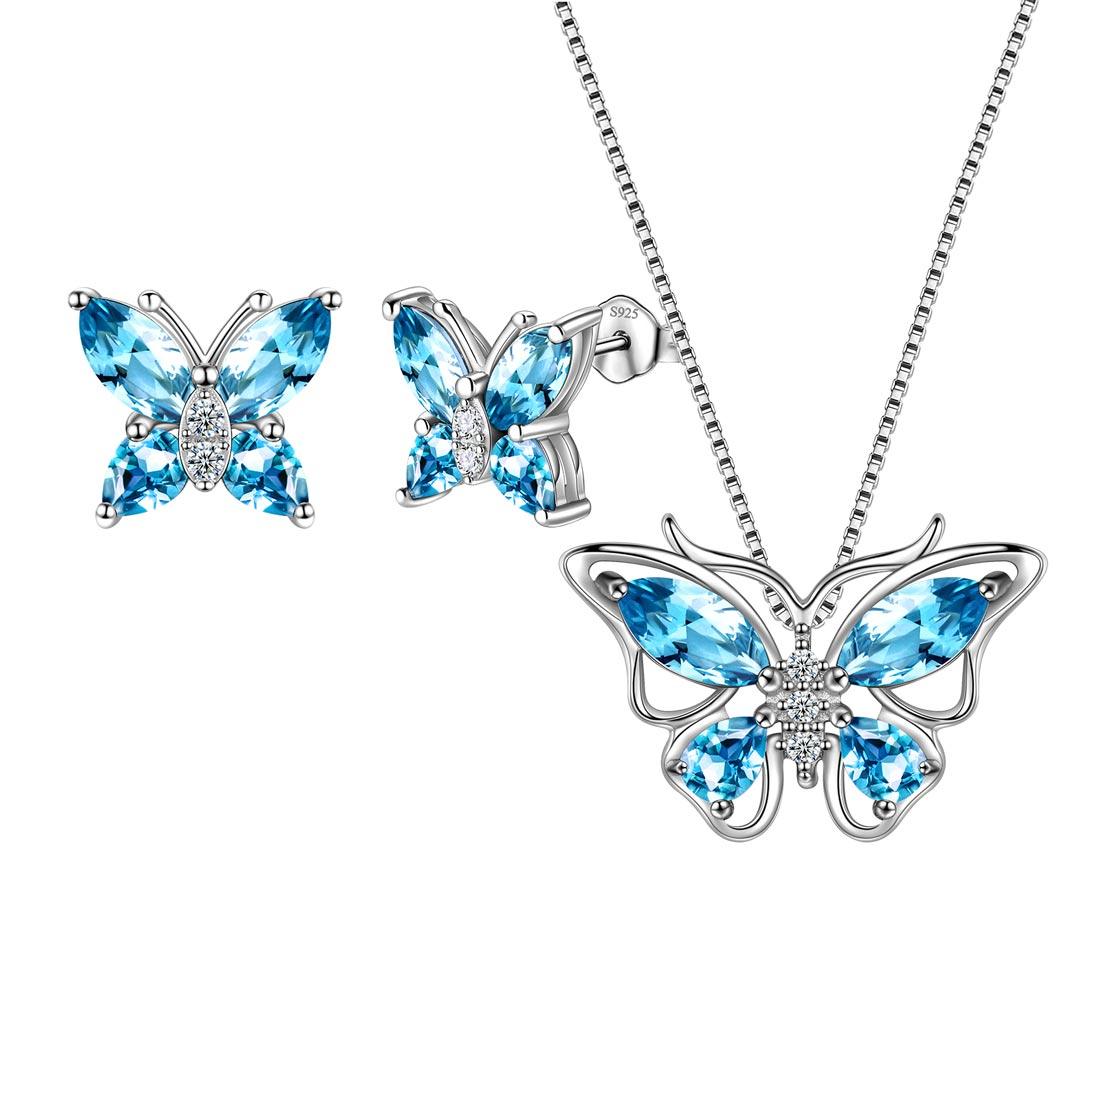 Butterfly Jewelry Set Birthstone March Aquamarine - Jewelry Set - Aurora Tears